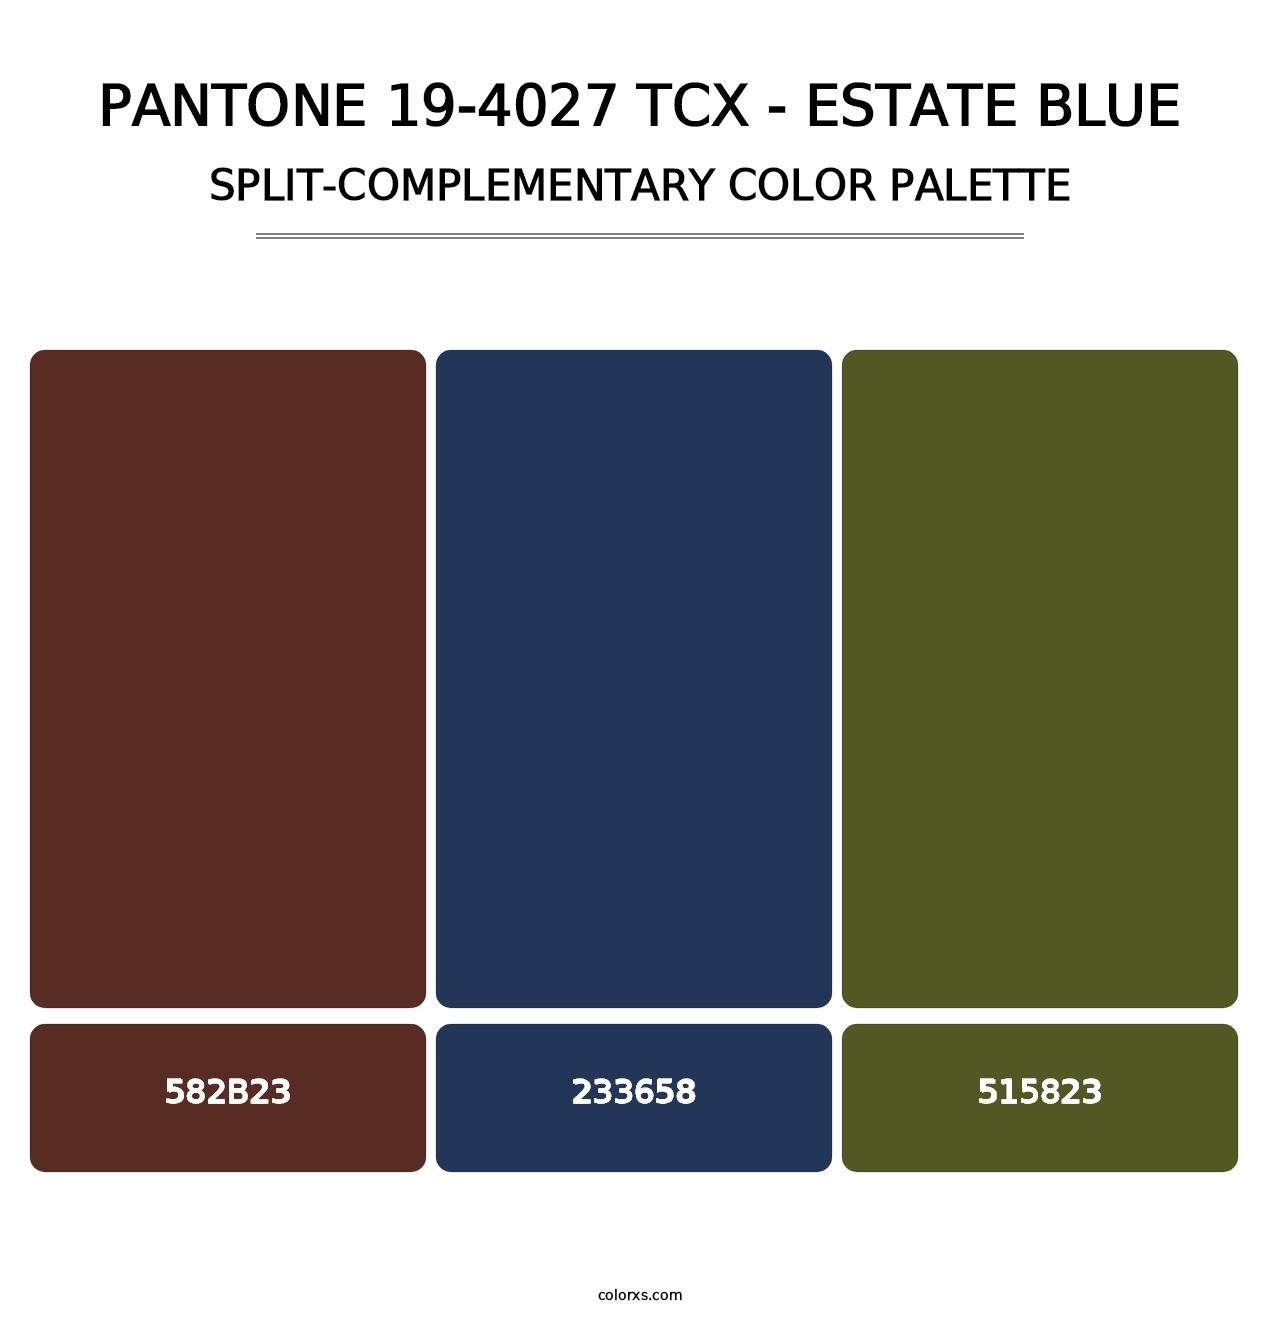 PANTONE 19-4027 TCX - Estate Blue - Split-Complementary Color Palette